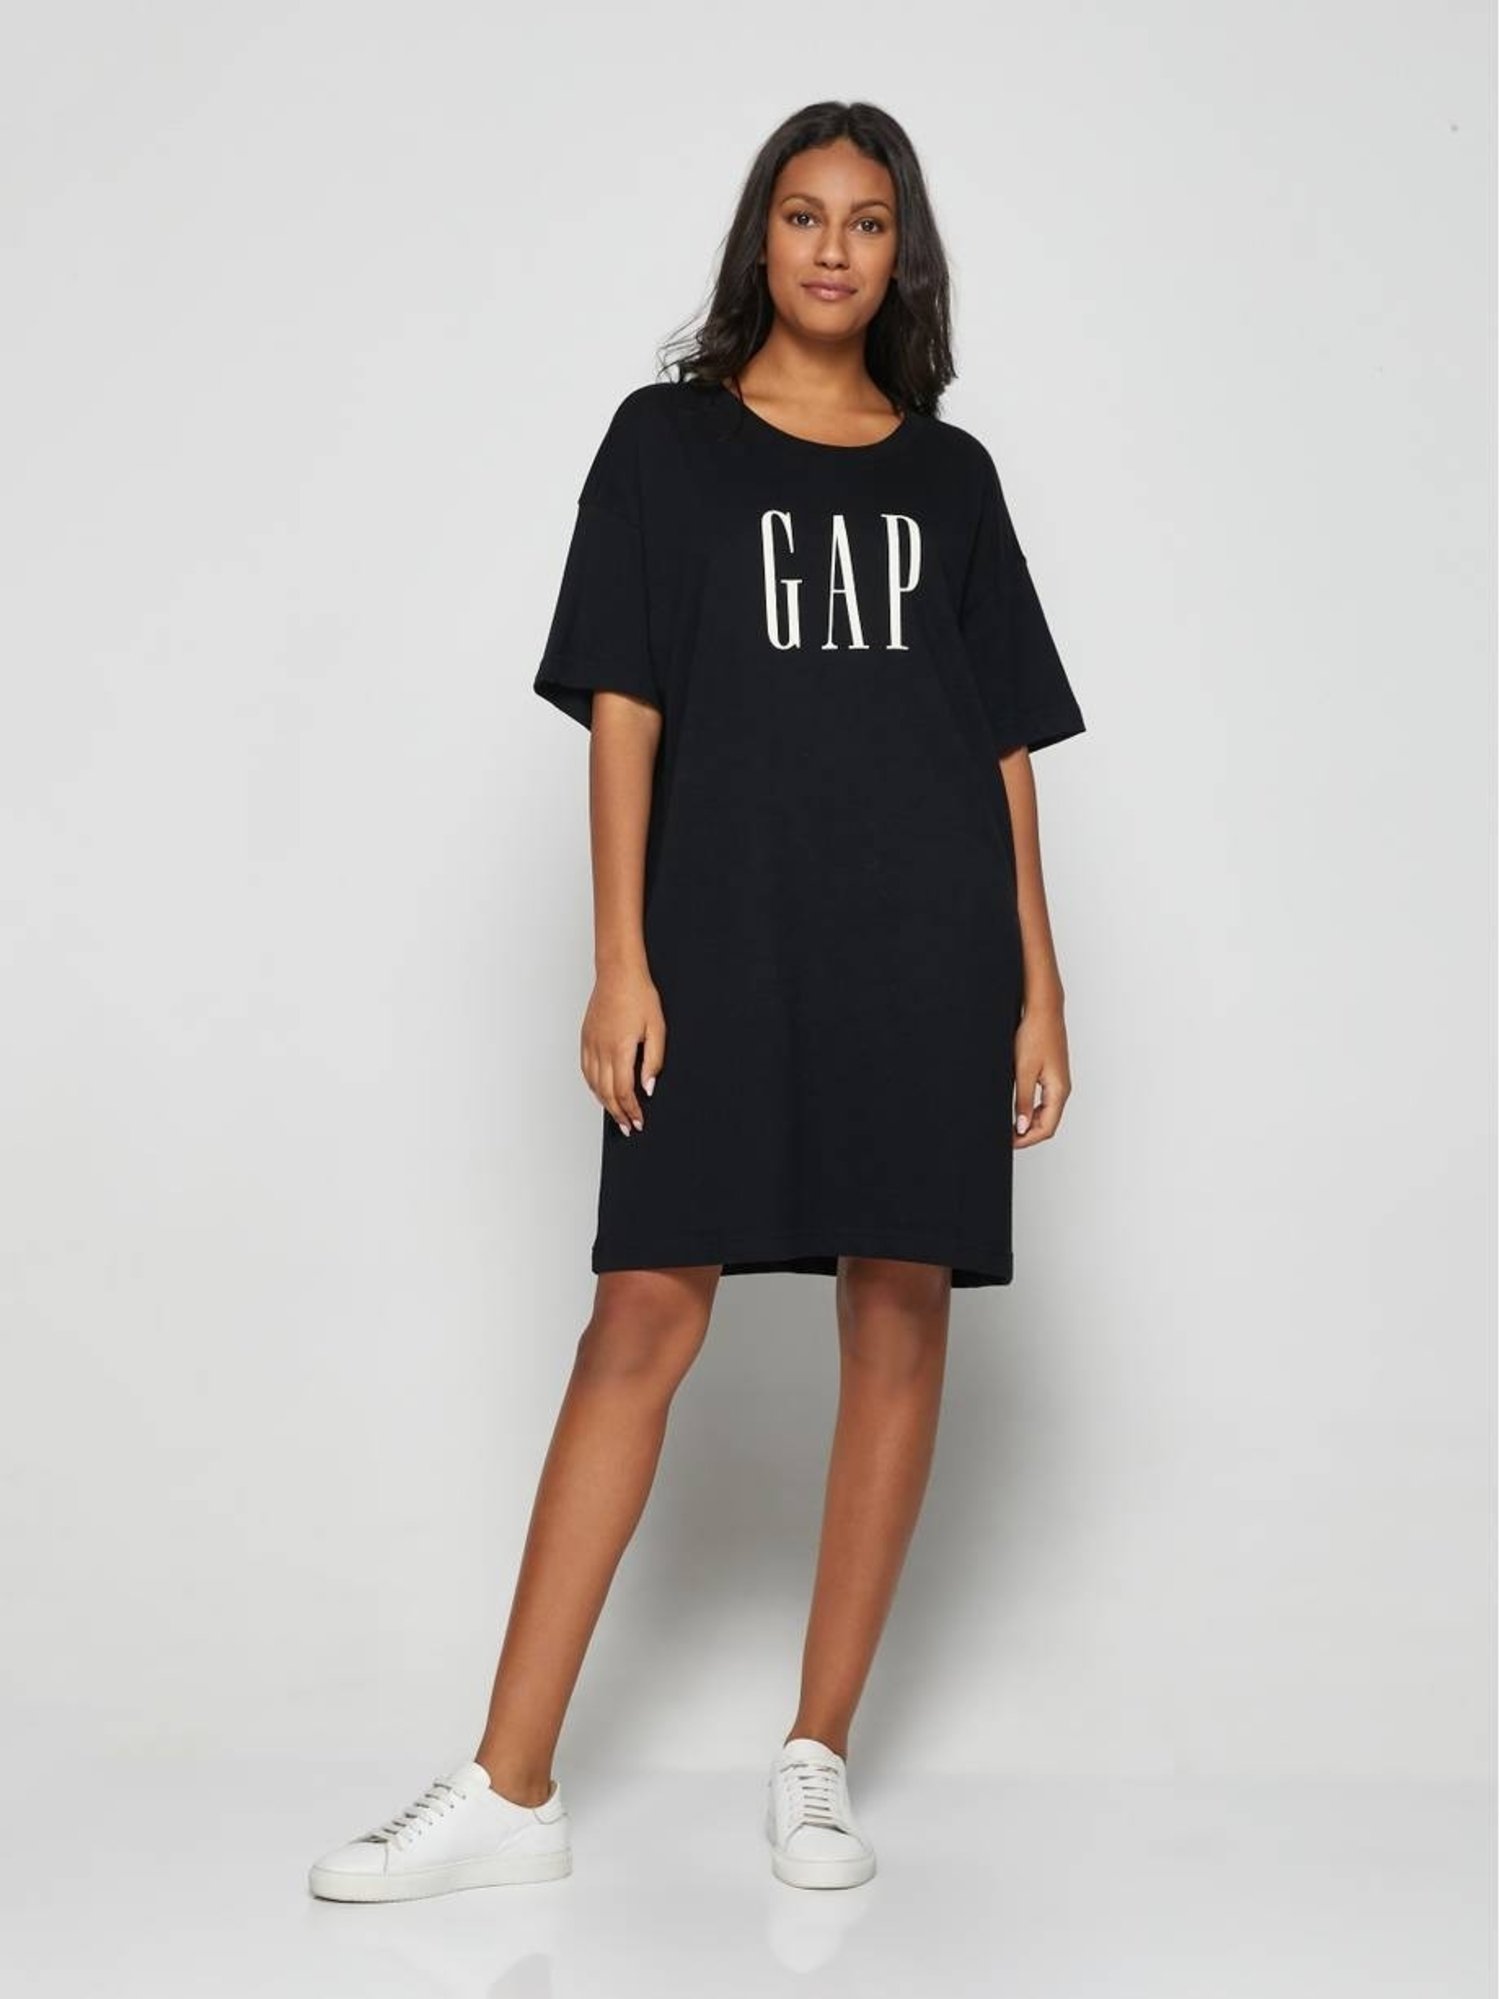 Gap Logo T-shirt Elbise product image